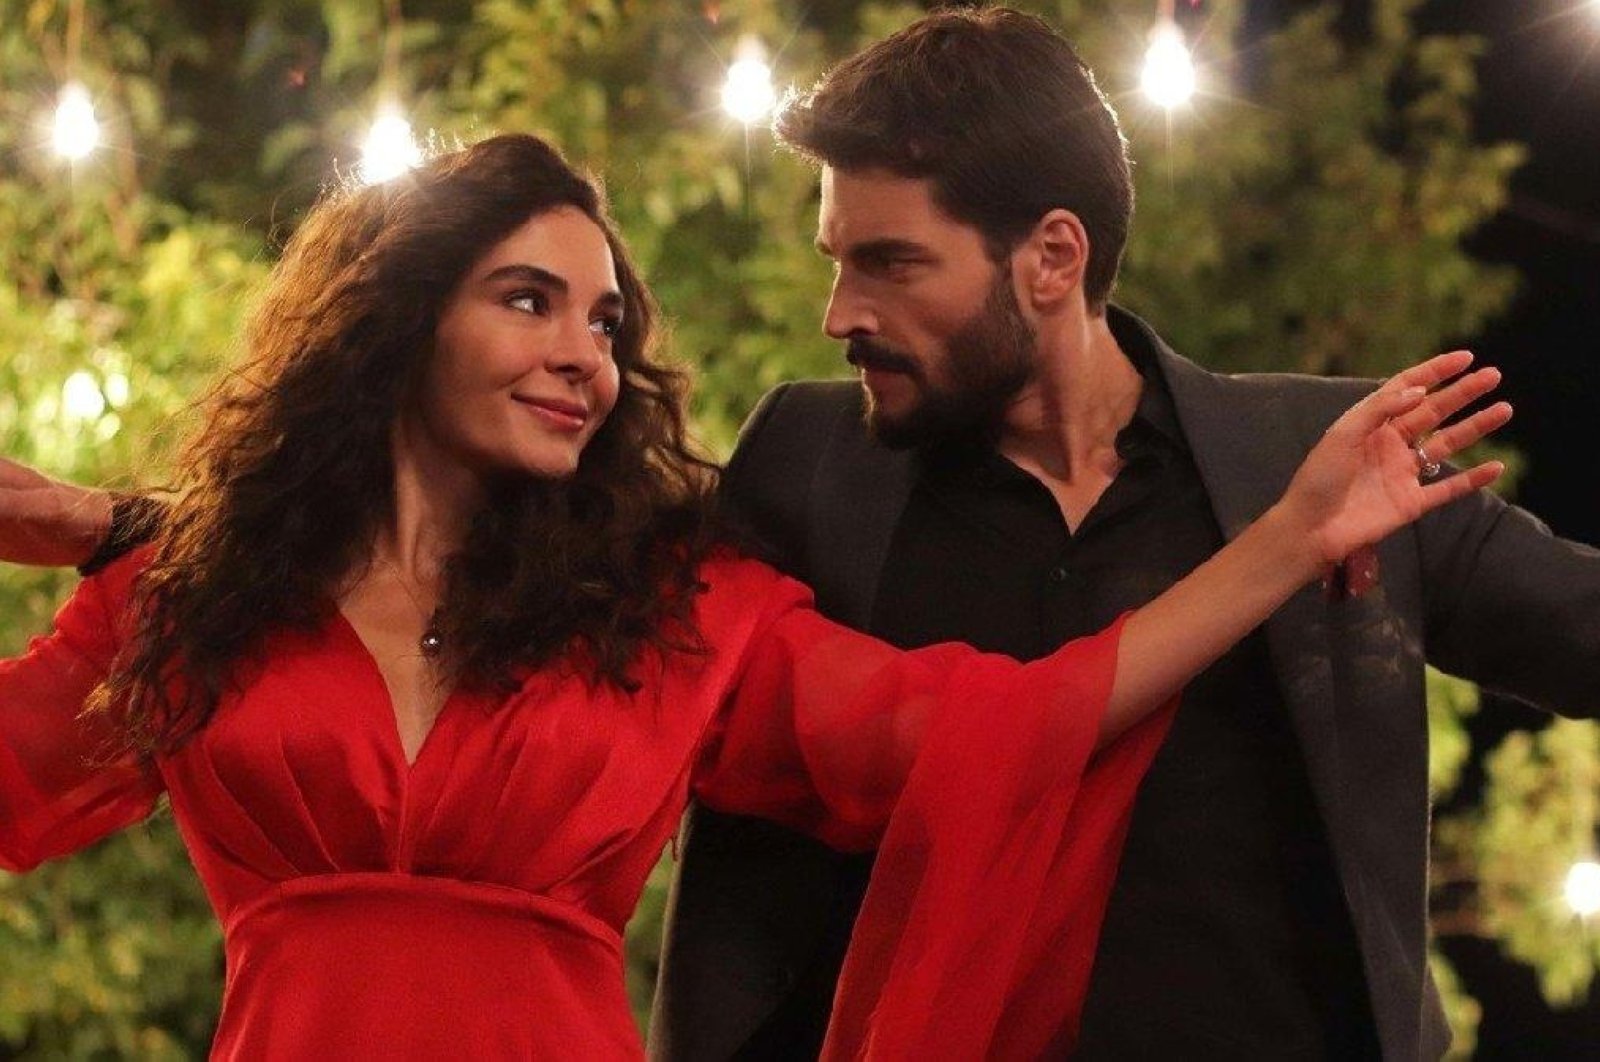 Amerikalı psikolog, Türk dizisi “Hercai”nin bir televizyon programından daha fazlası olduğunu söylüyor